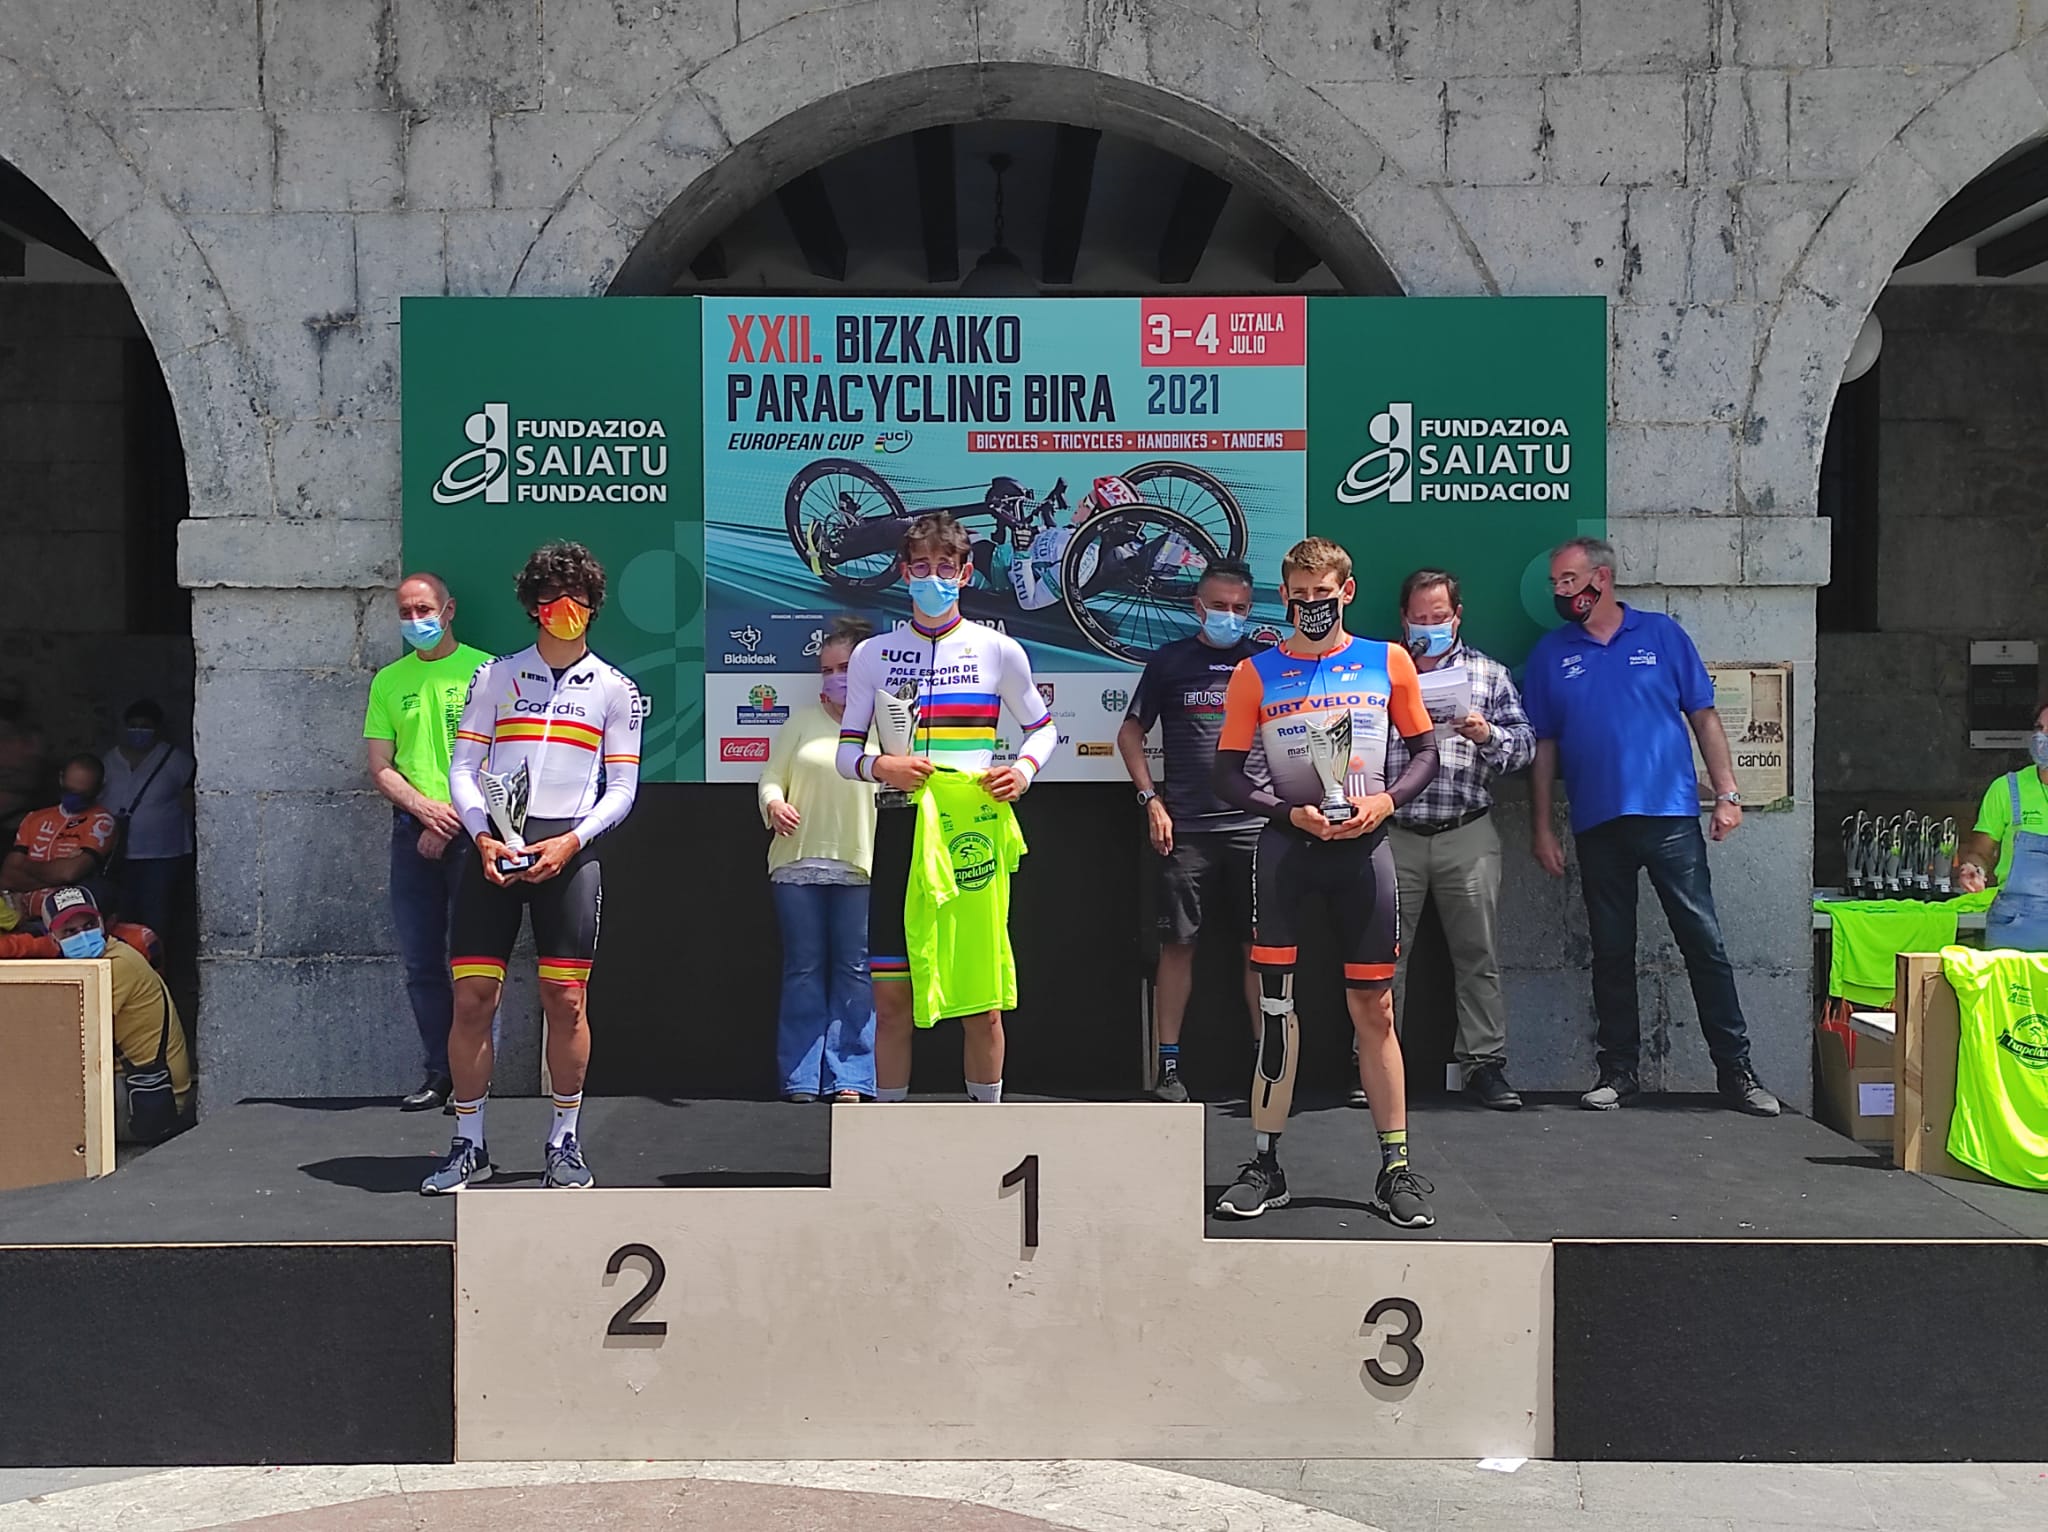 La Selección Española de Ciclismo Adaptado completa una gran Paracycling Bira